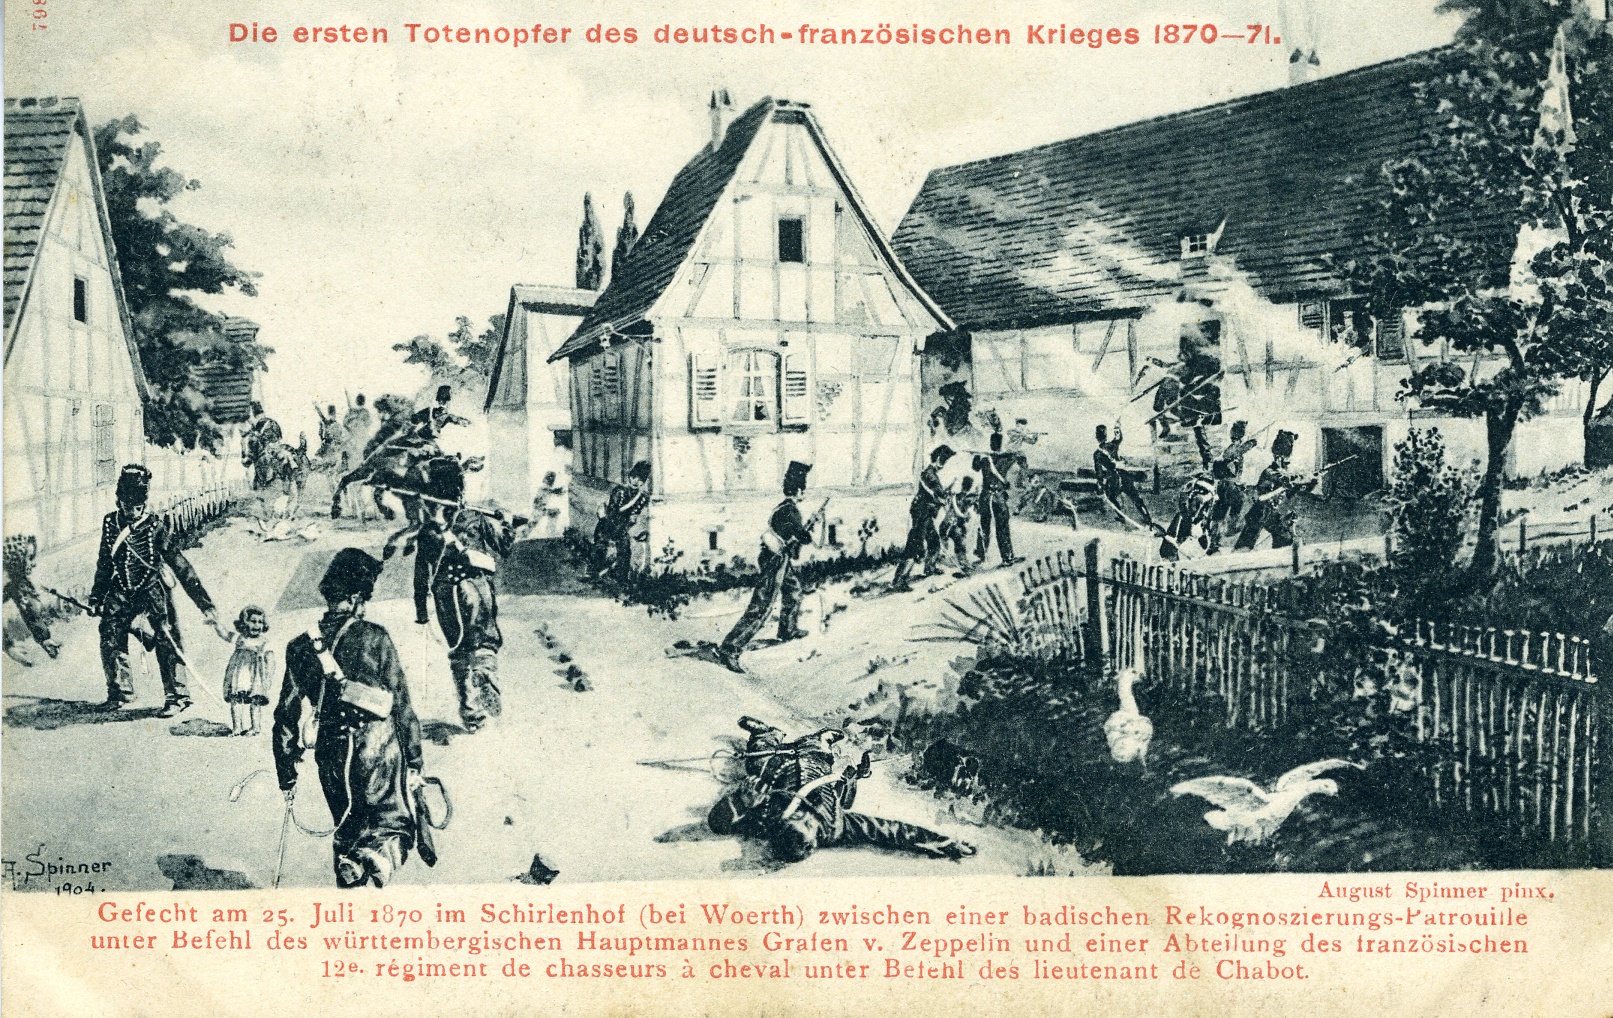 Postkarte August Spinner 1904 (Historisches Museum der Pfalz, Speyer CC BY)